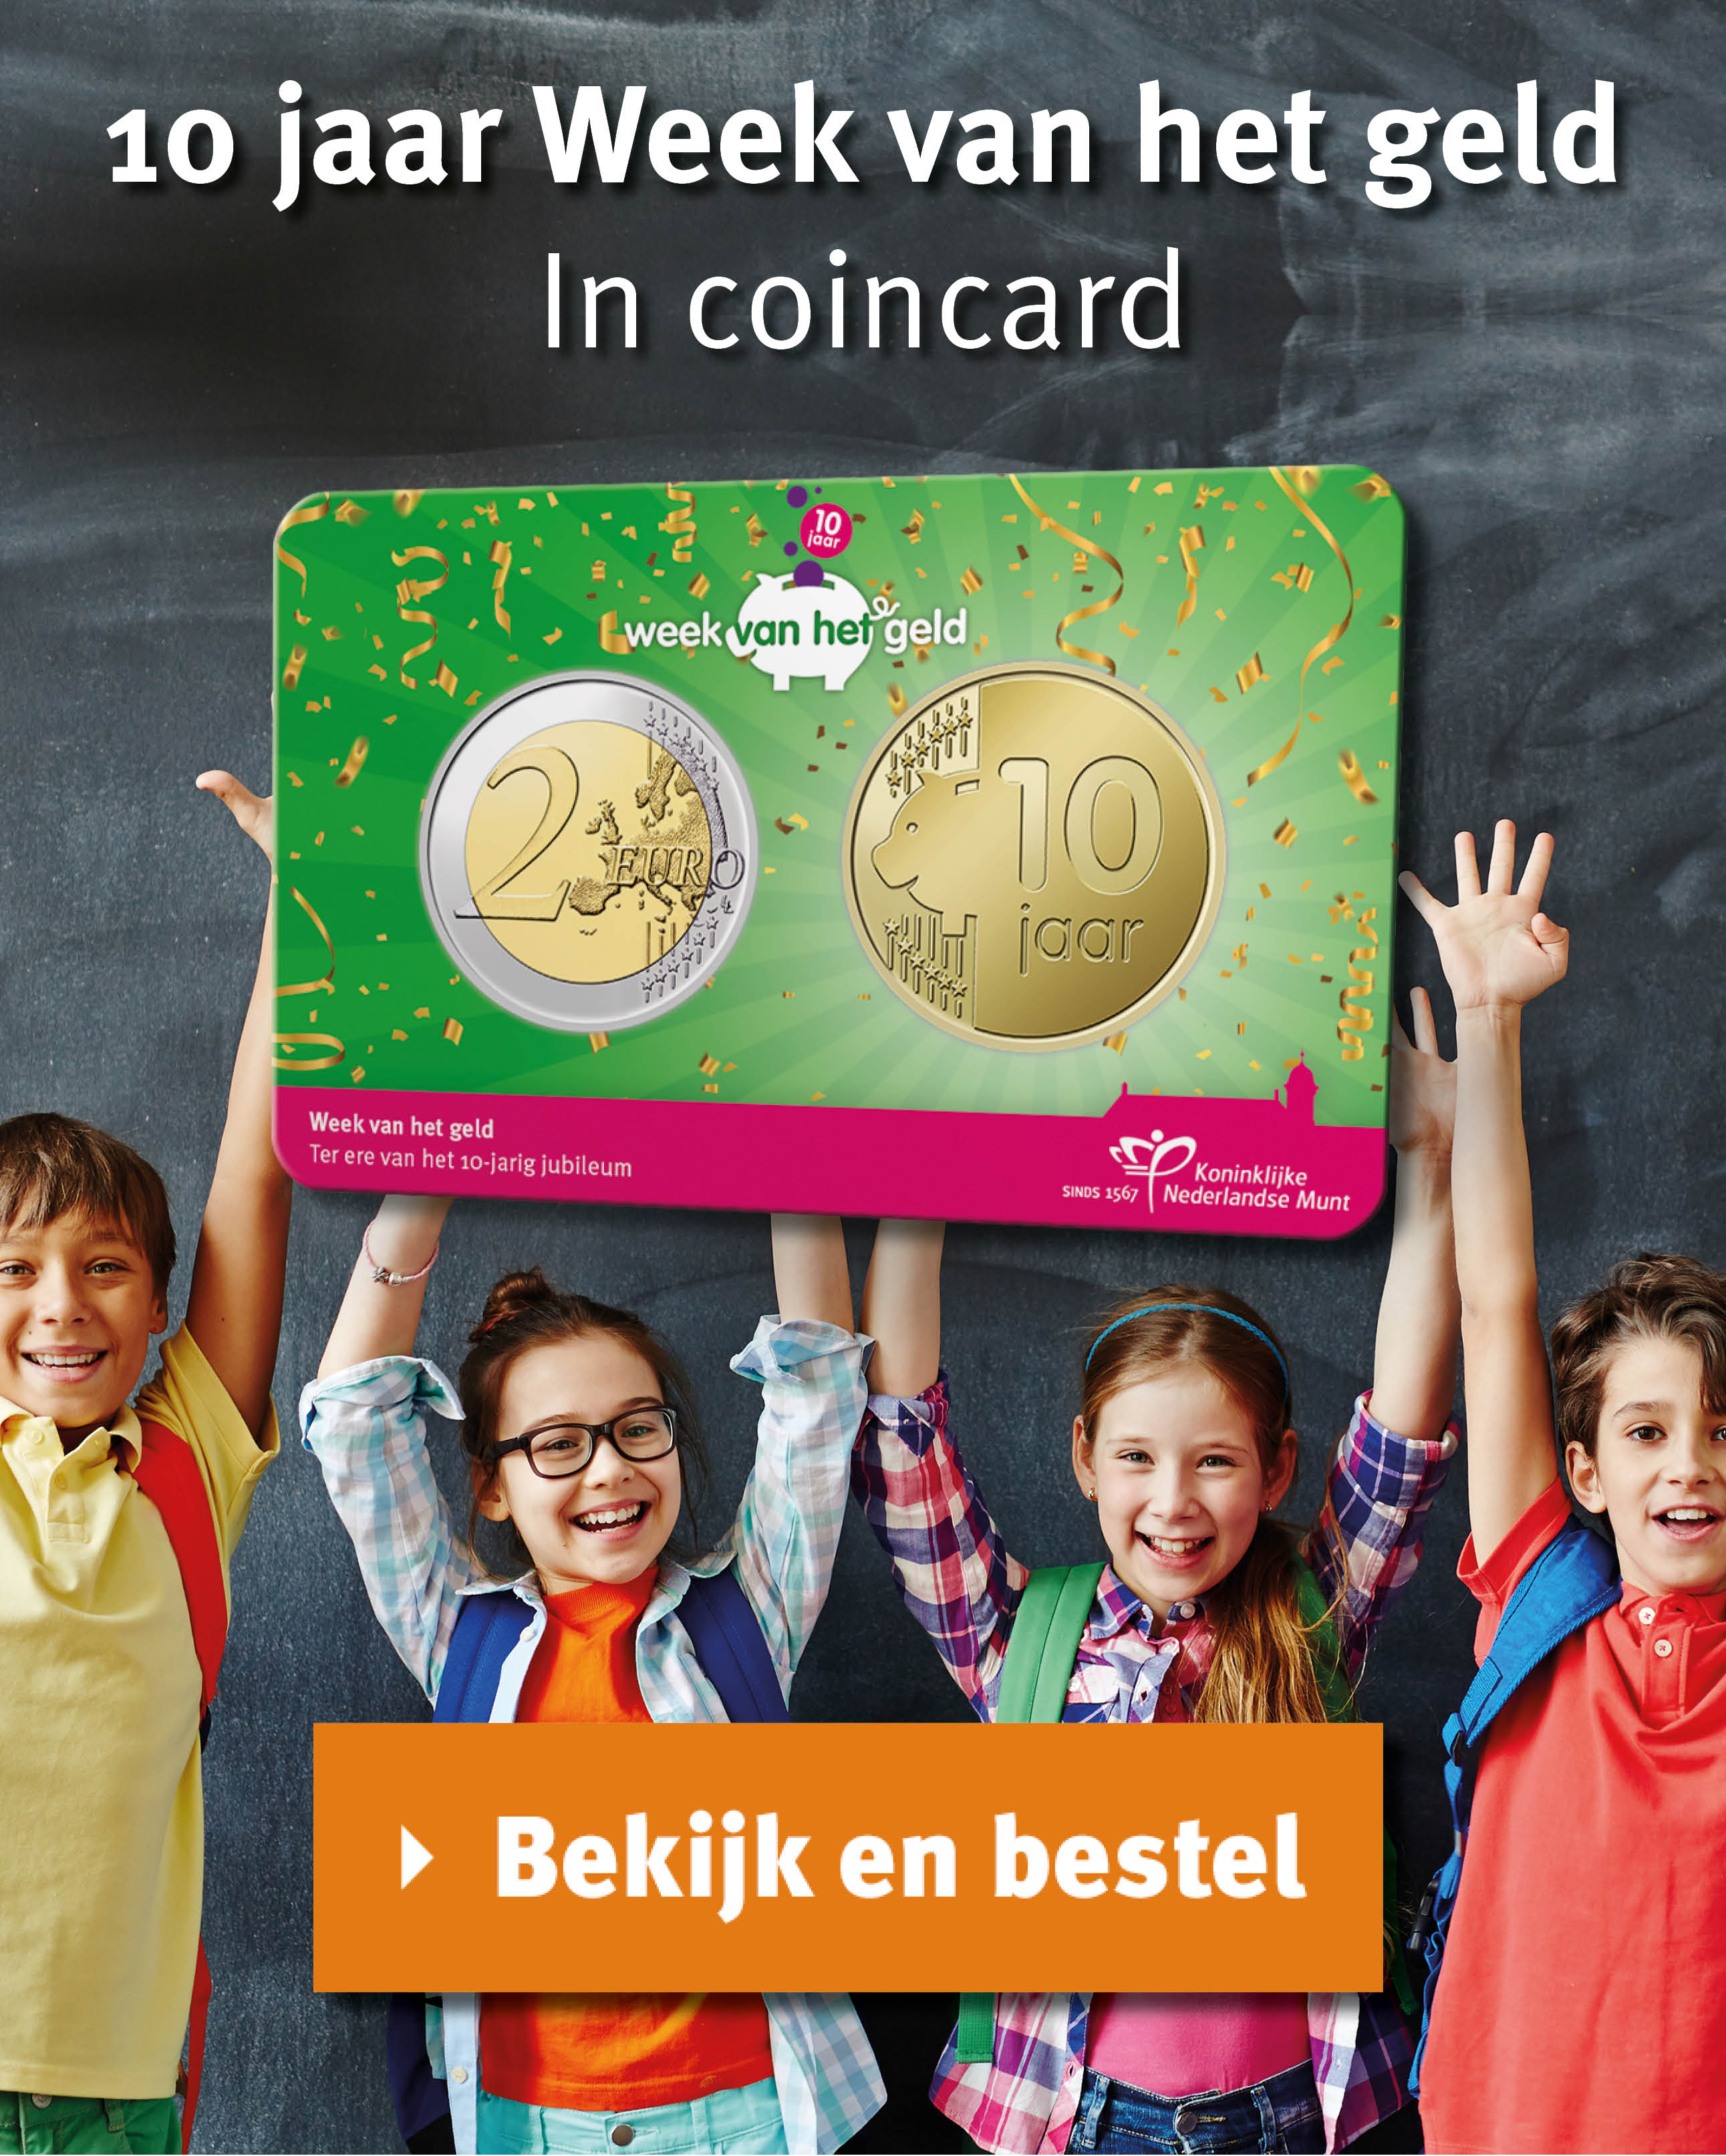 Bekijk en bestel: 10 jaar Week van het geld in coincard